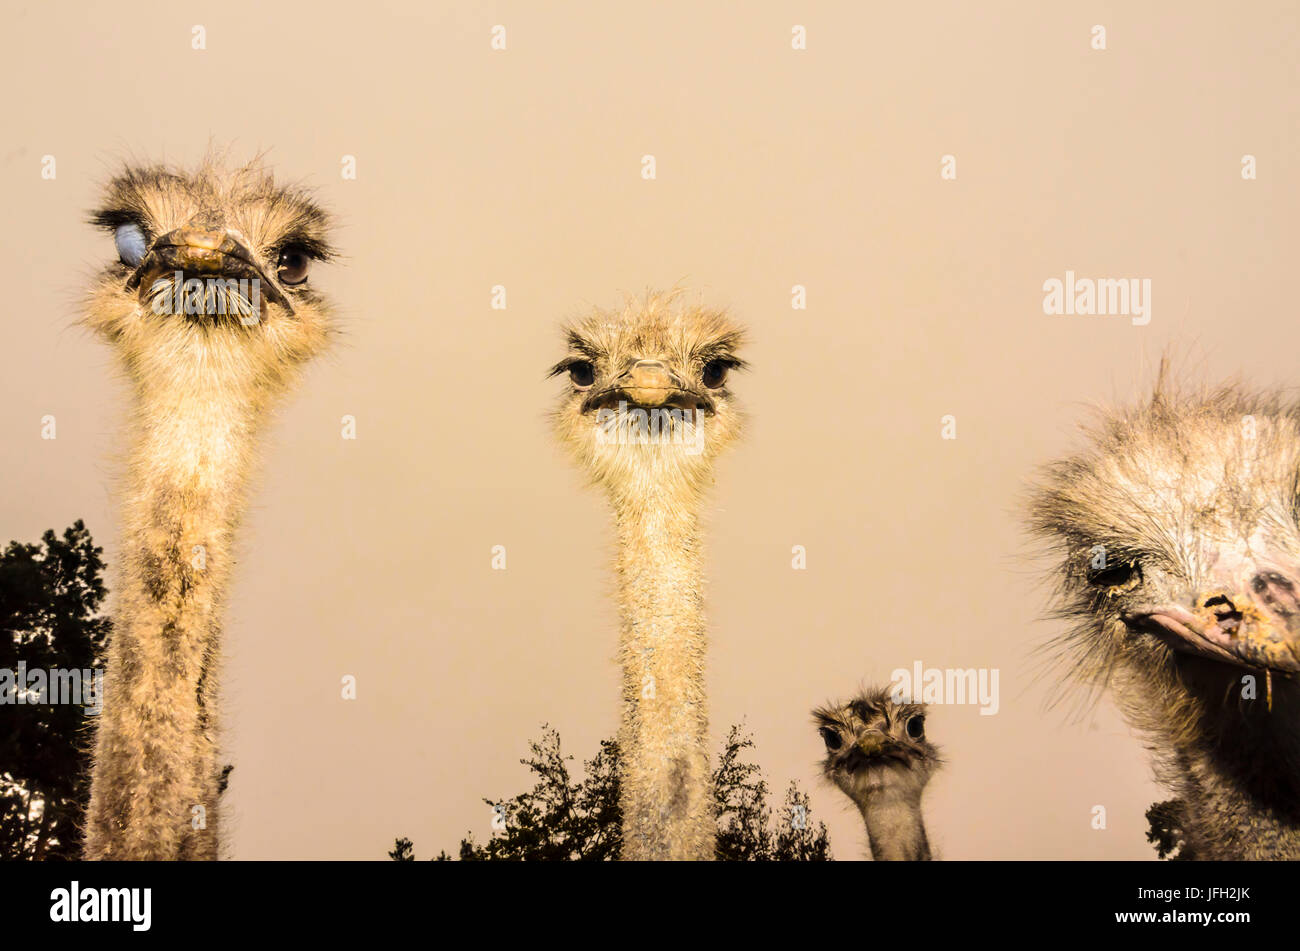 common ostrich (Struthio camelus) in Straußenfarm Stock Photo